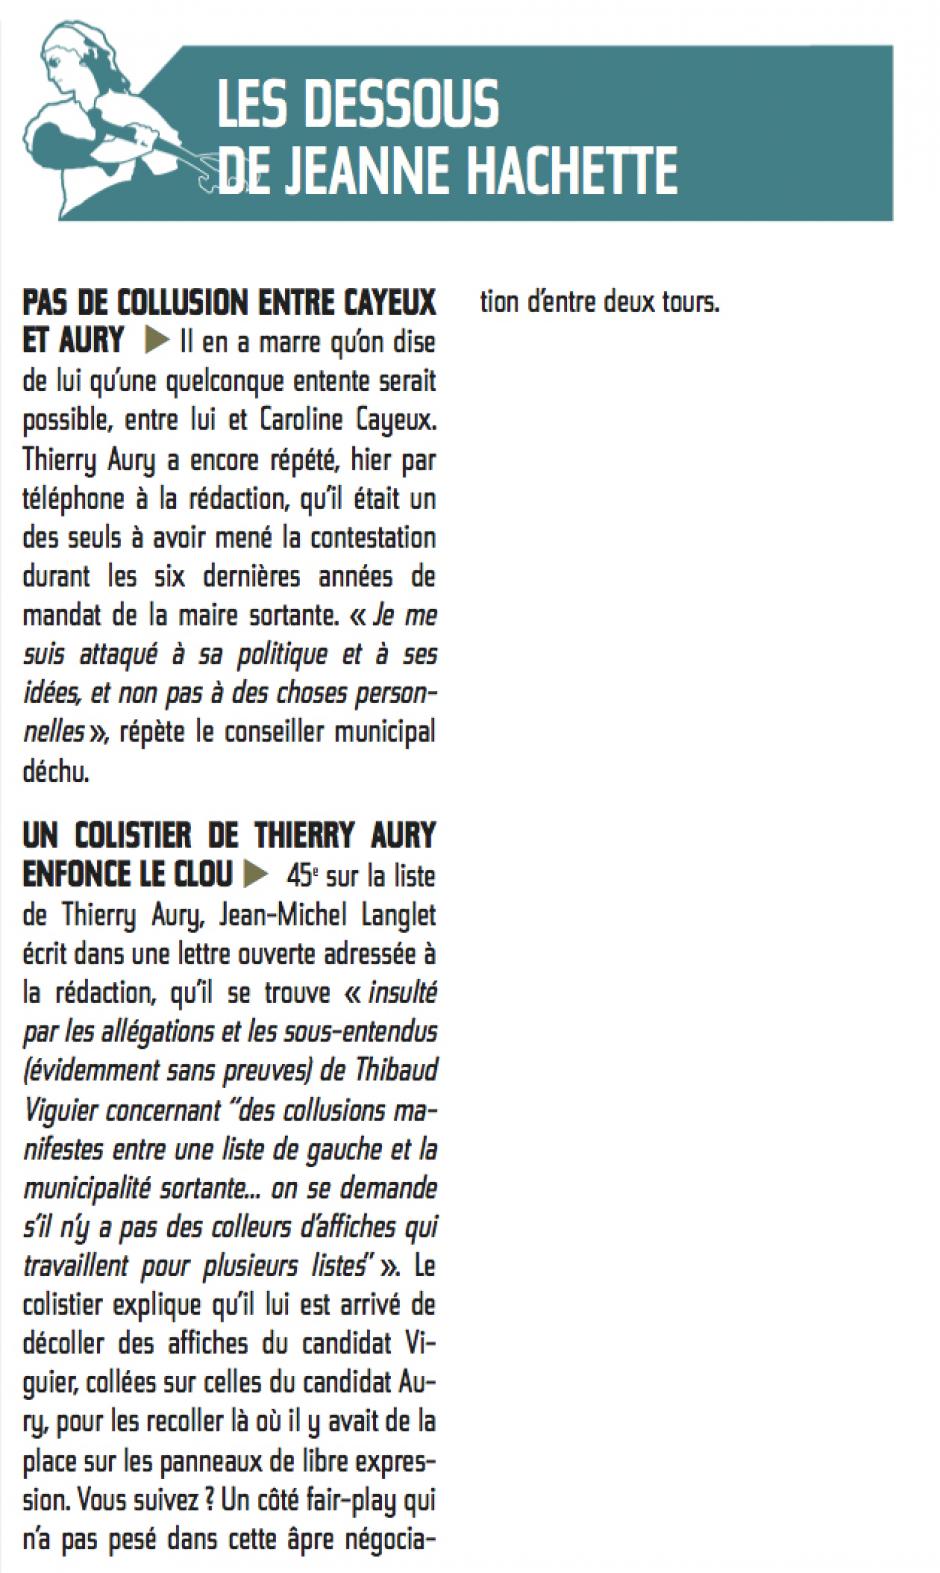 20140328-CP-Beauvais-Les dessous de Jeanne Hachette-Pas de collusion entre Cayeux et Thierry Aury